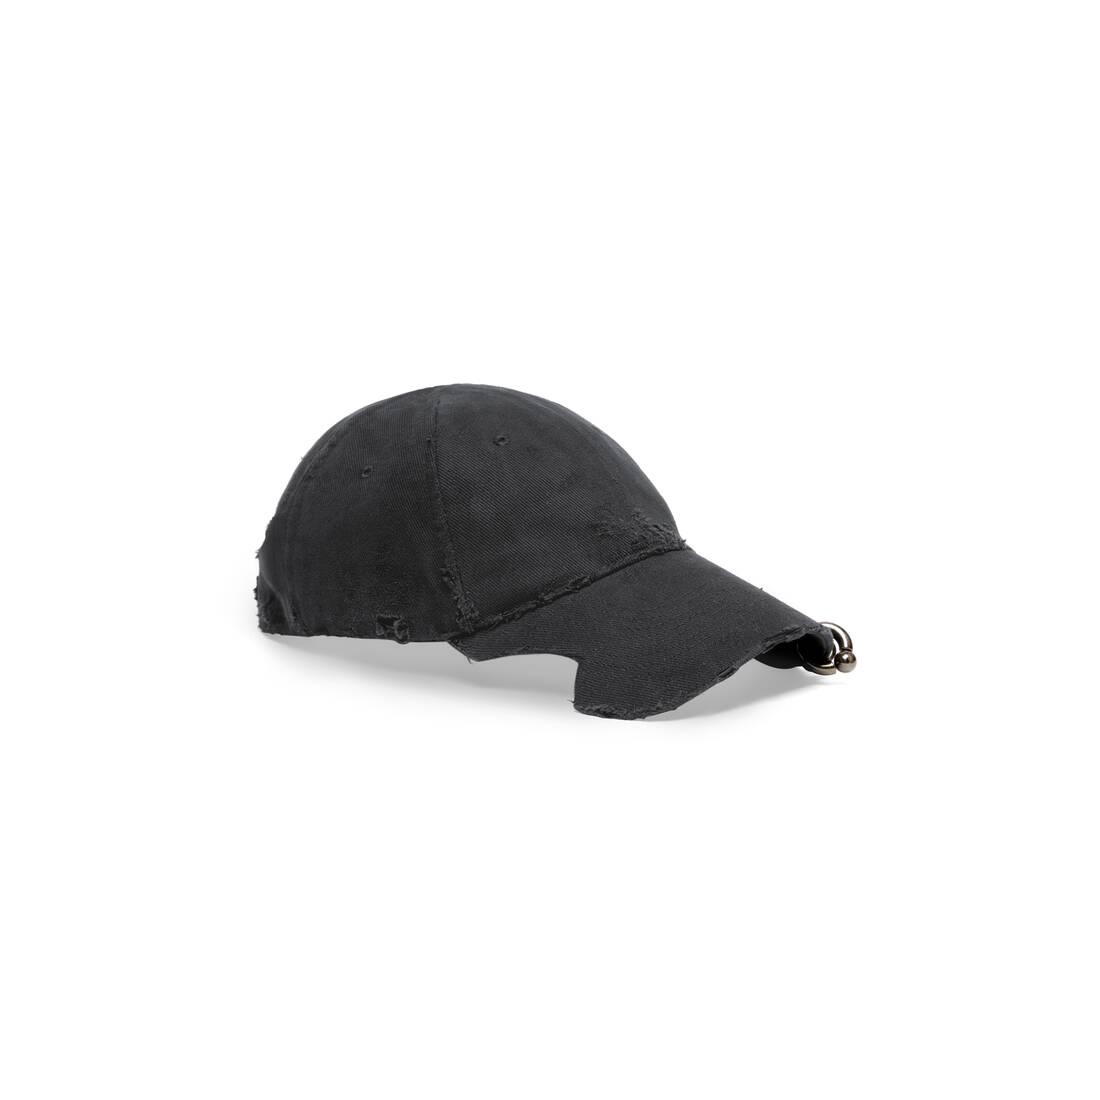 Heavy Piercing Cap in Black Faded - 2